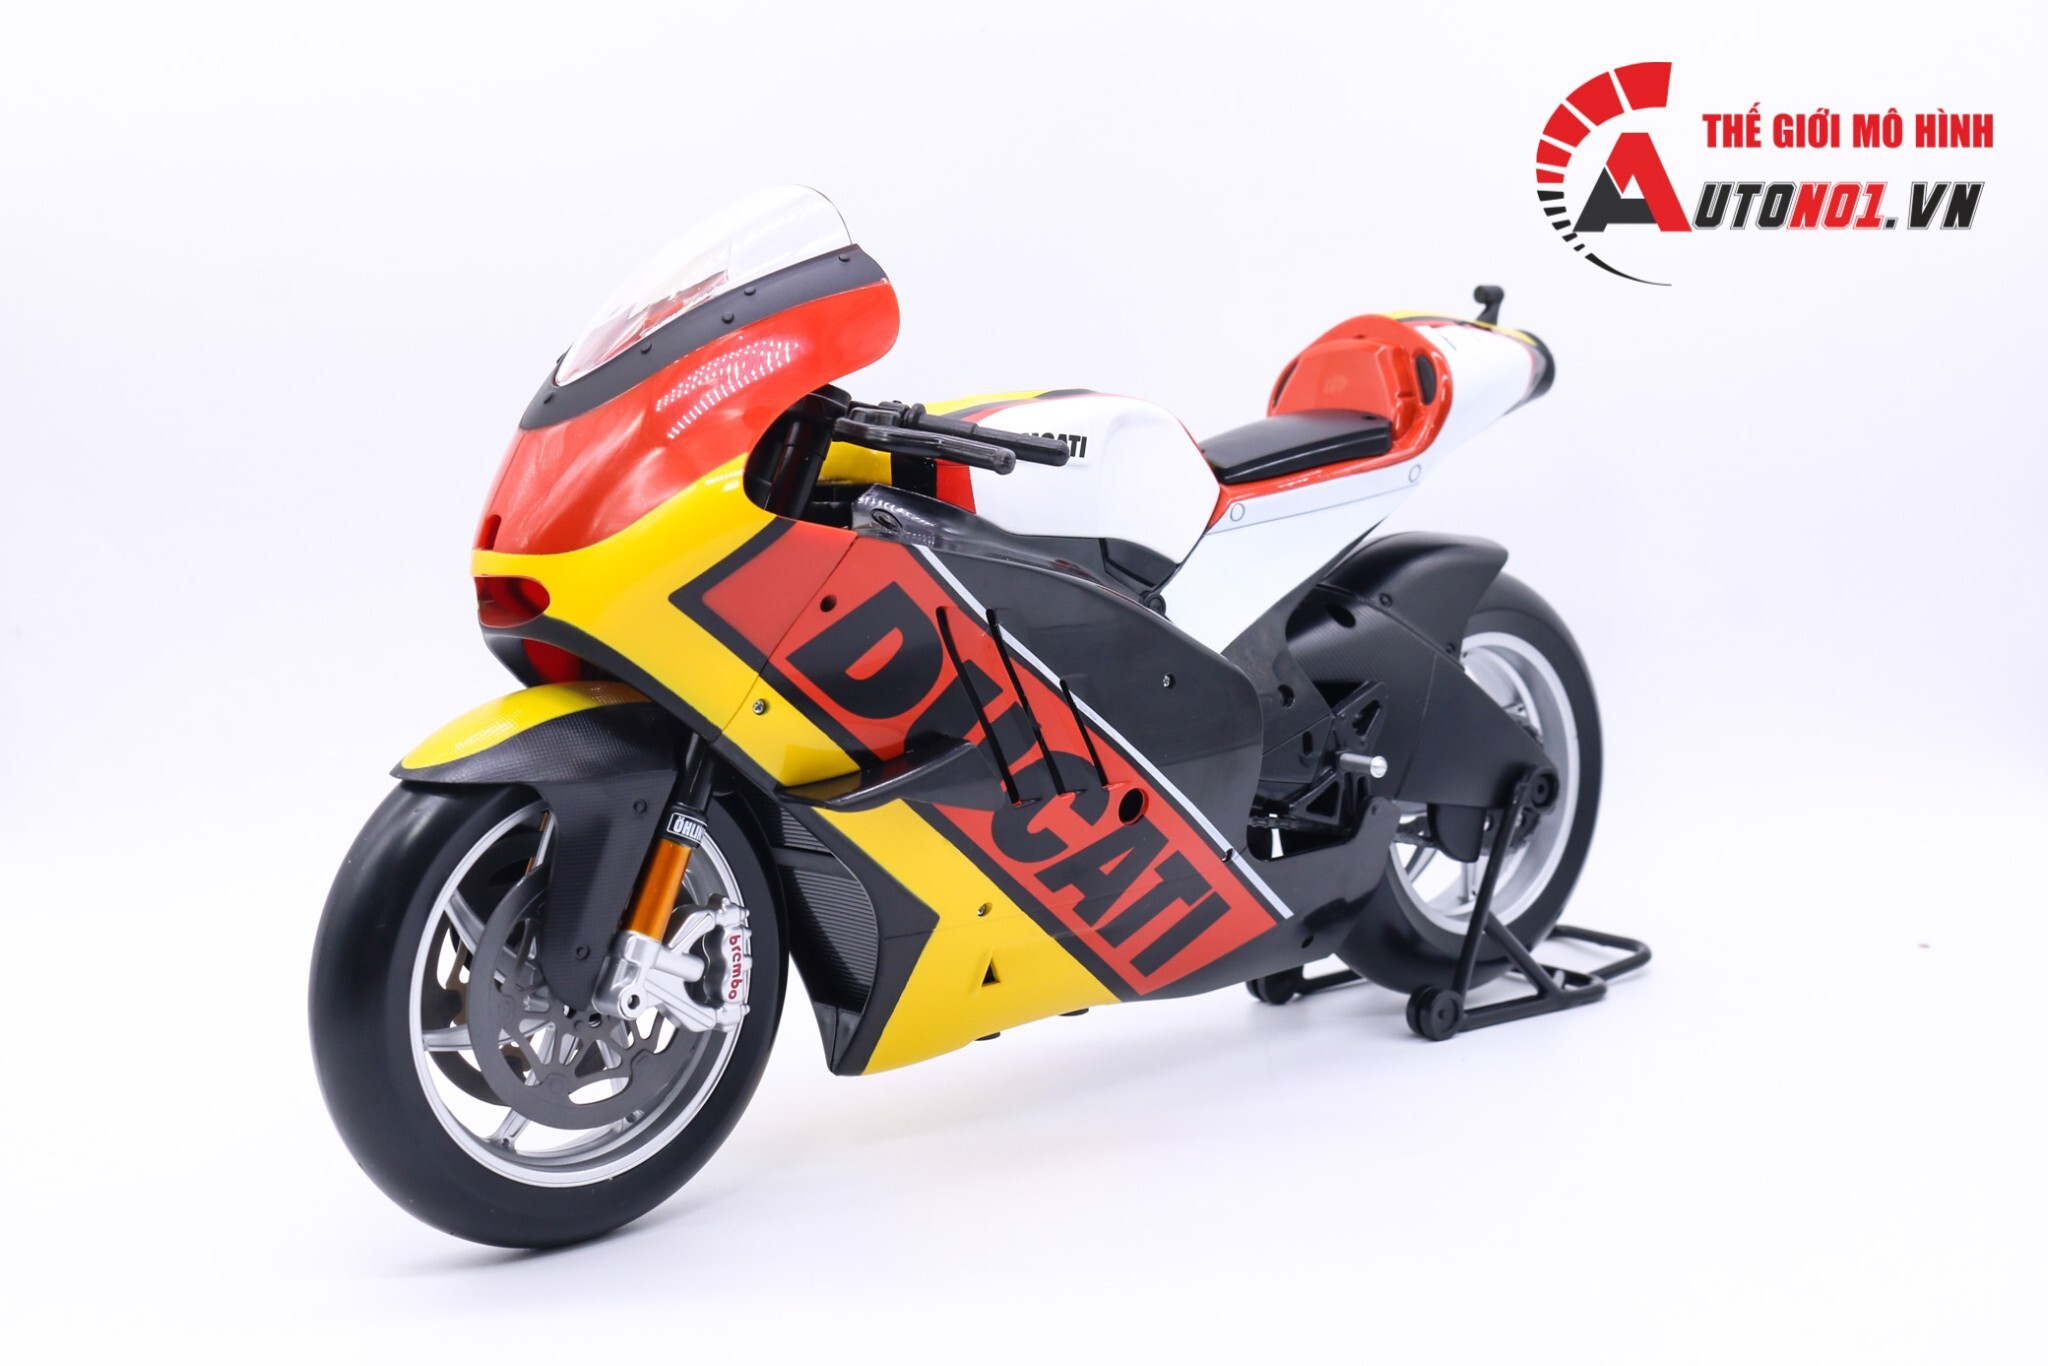 Mô hình xe mô tô Ducati Desmosedici Germany 1:6 Maisto